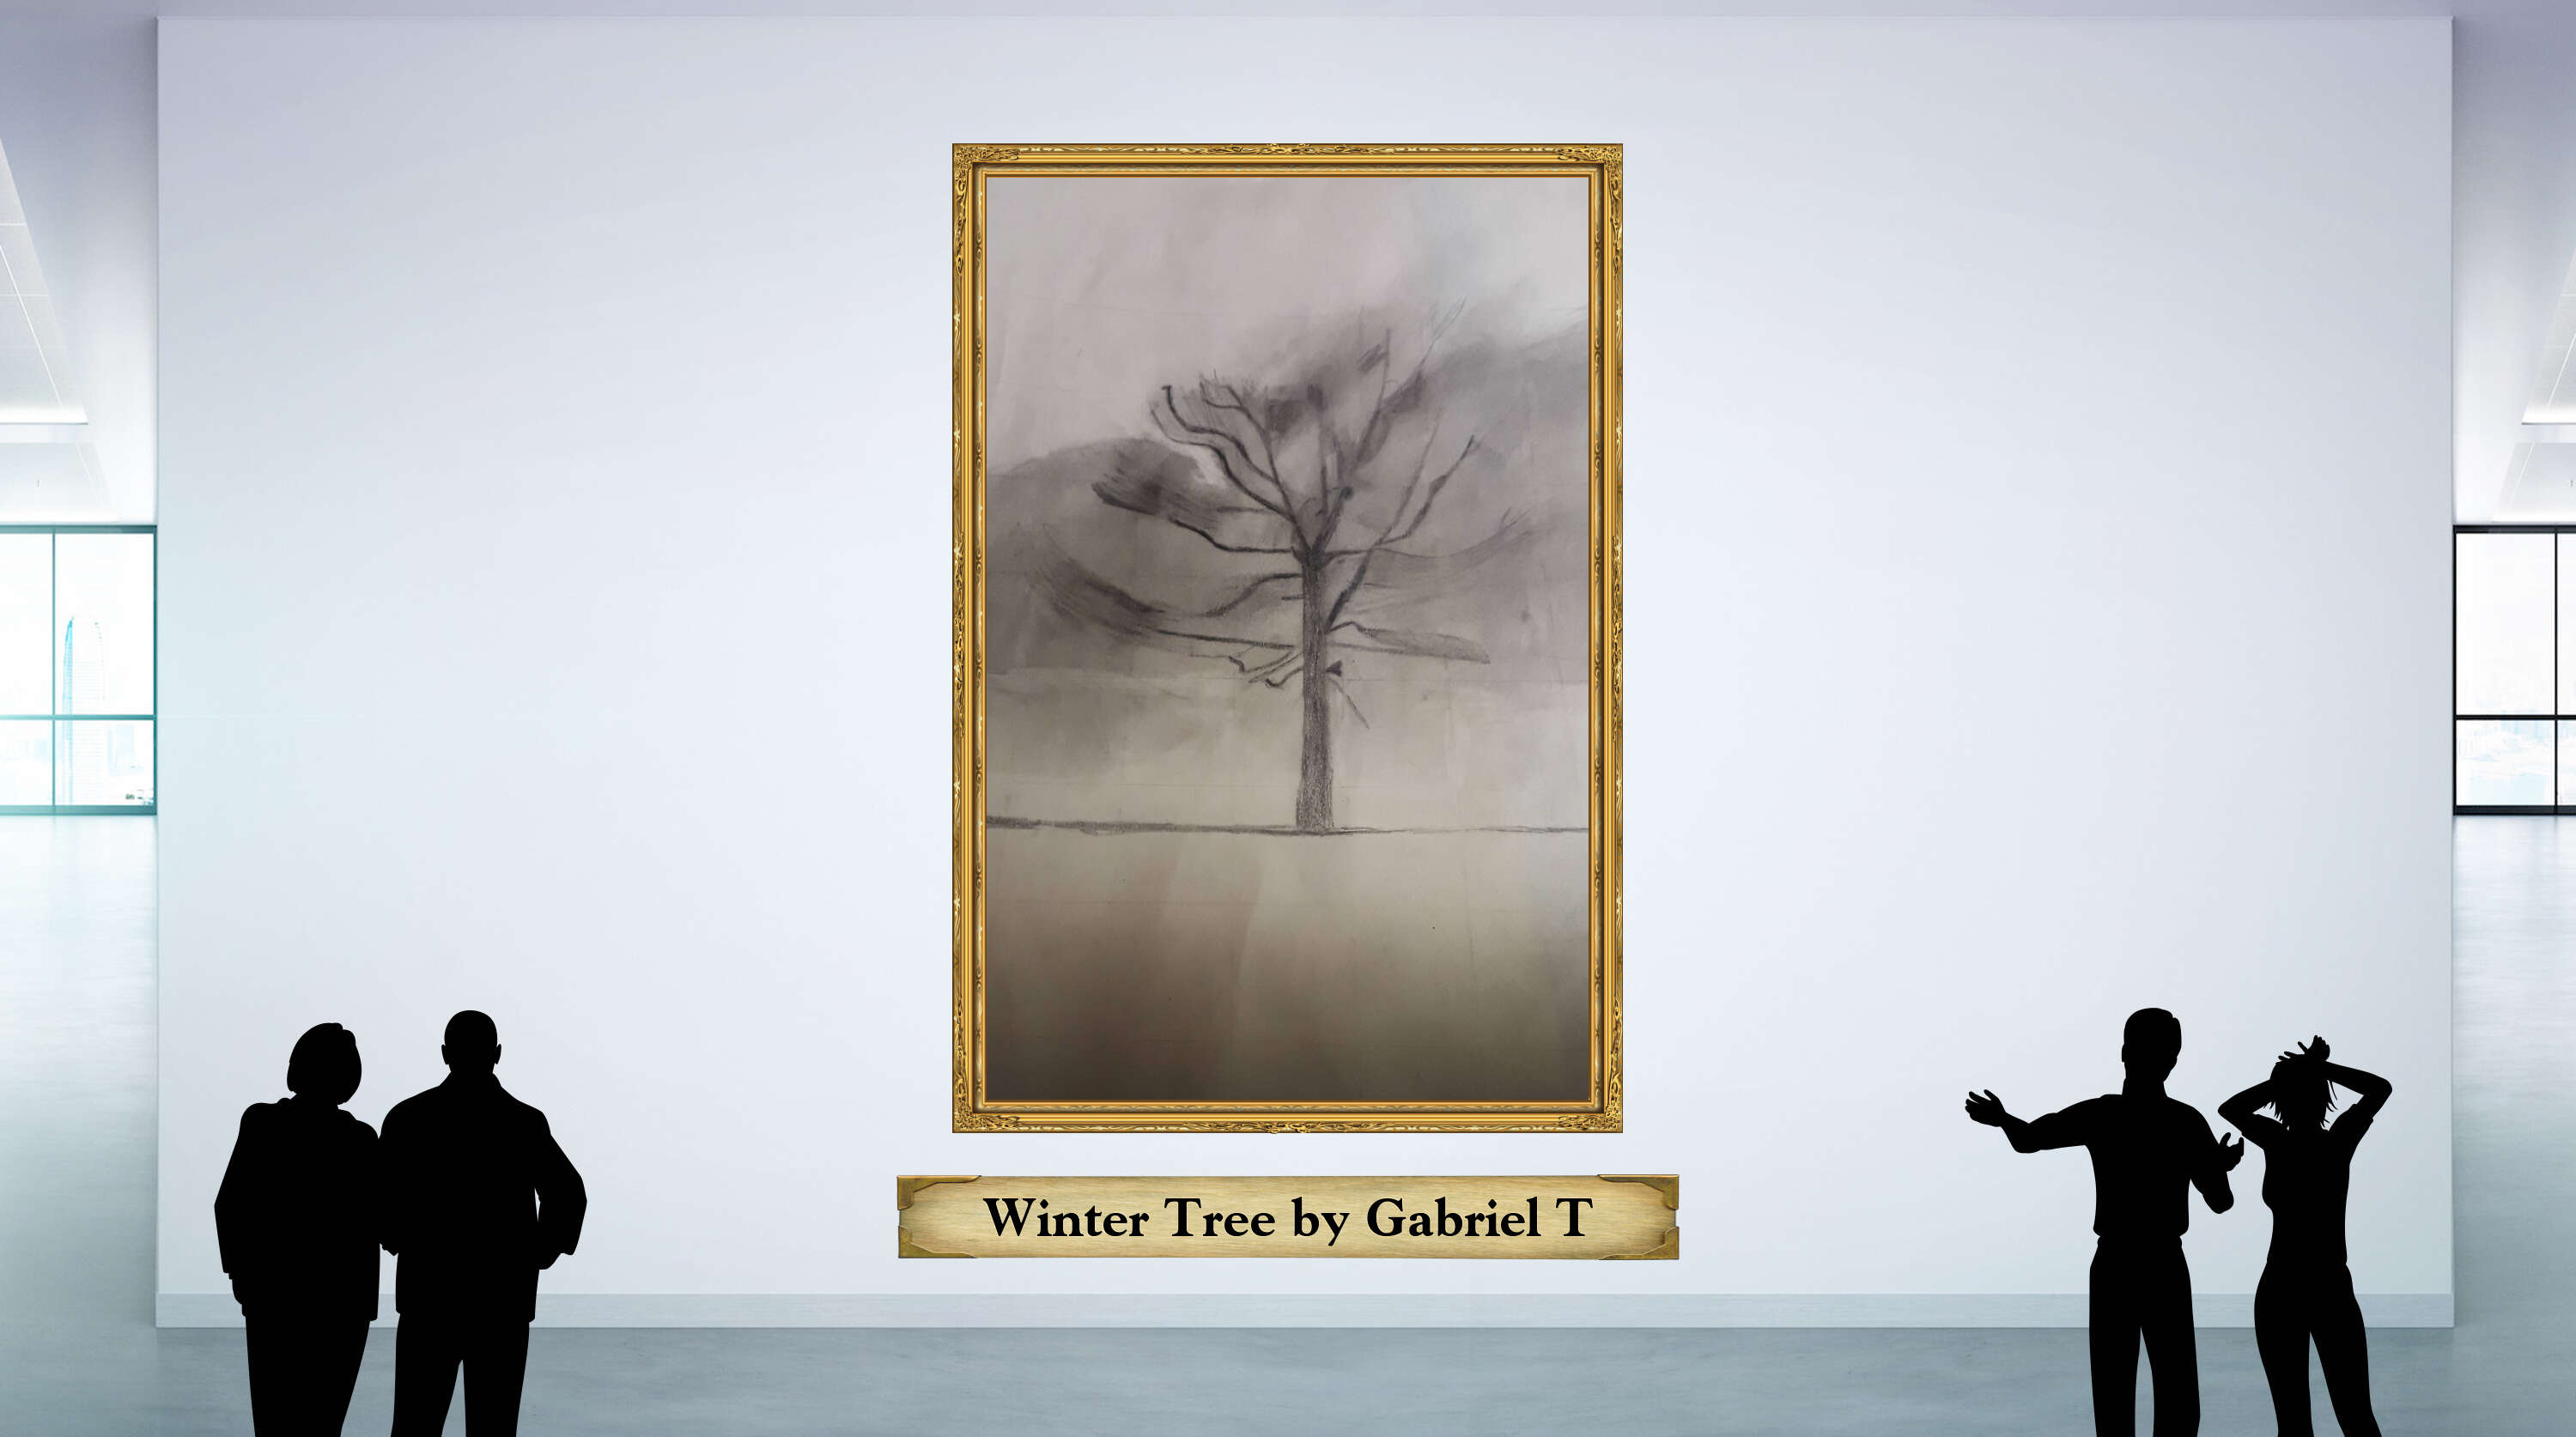 Winter Tree by Gabriel T